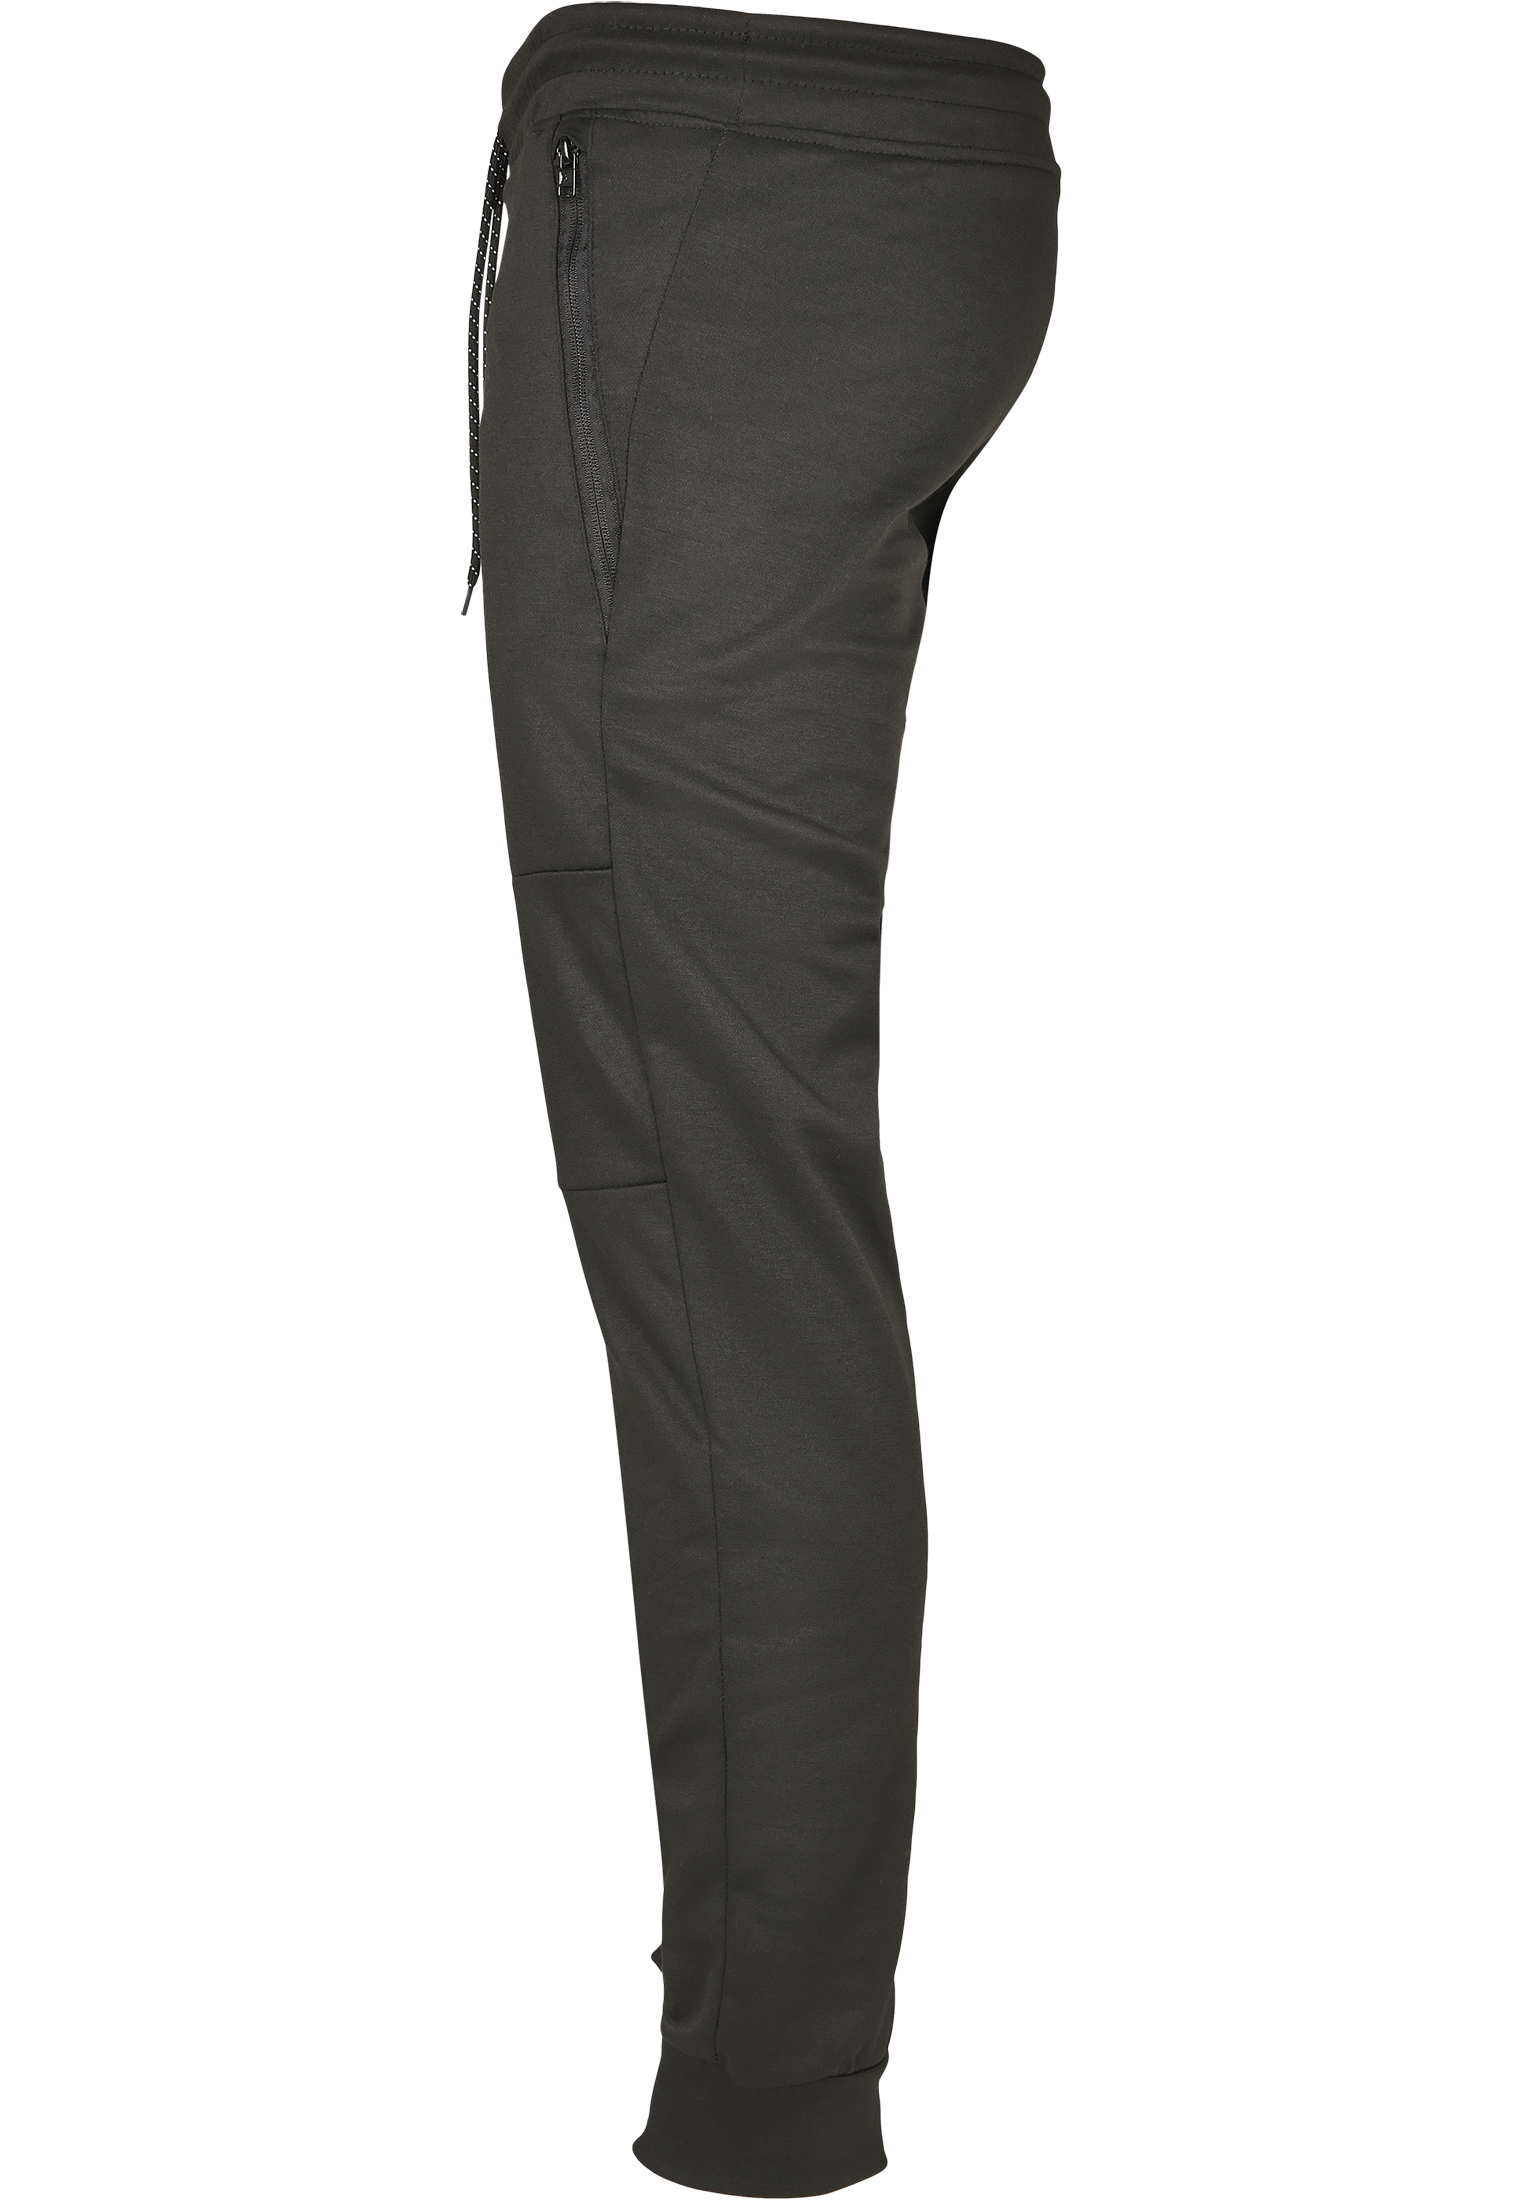 Nos Kollektion Basic Tech Fleece Jogger in Farbe black